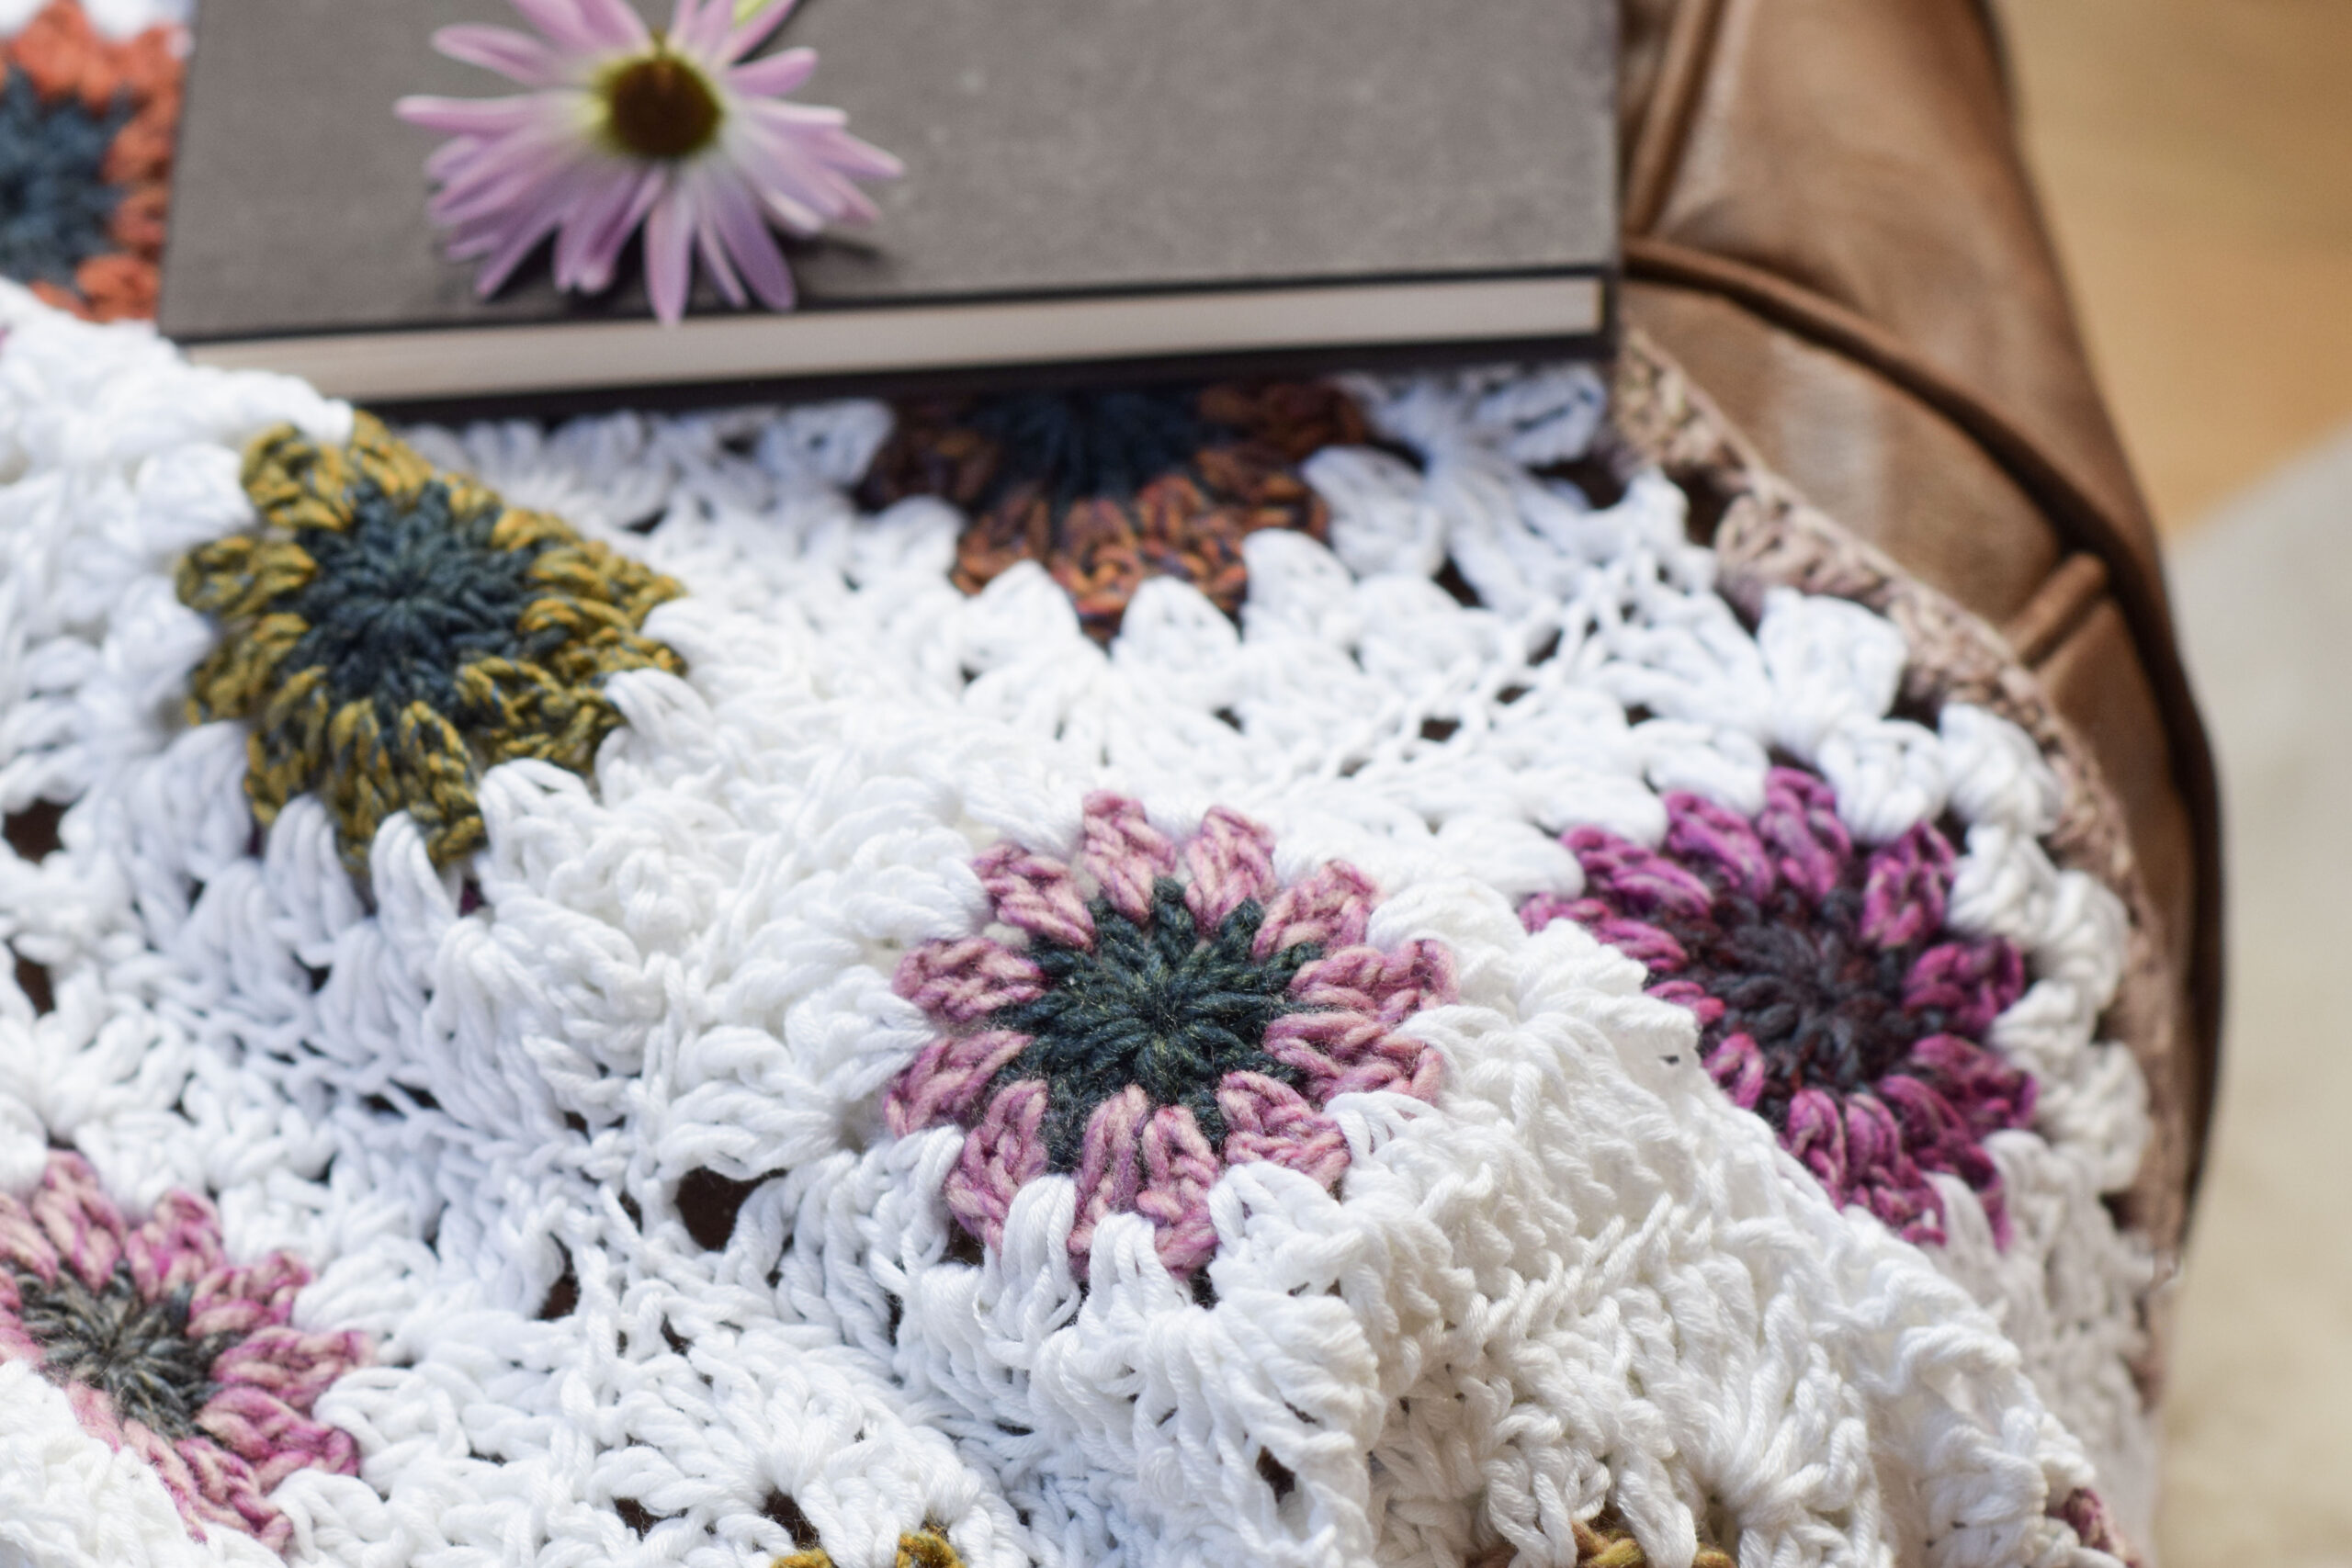 270 Best Crochet Projects ideas  crochet patterns, crochet projects,  crochet